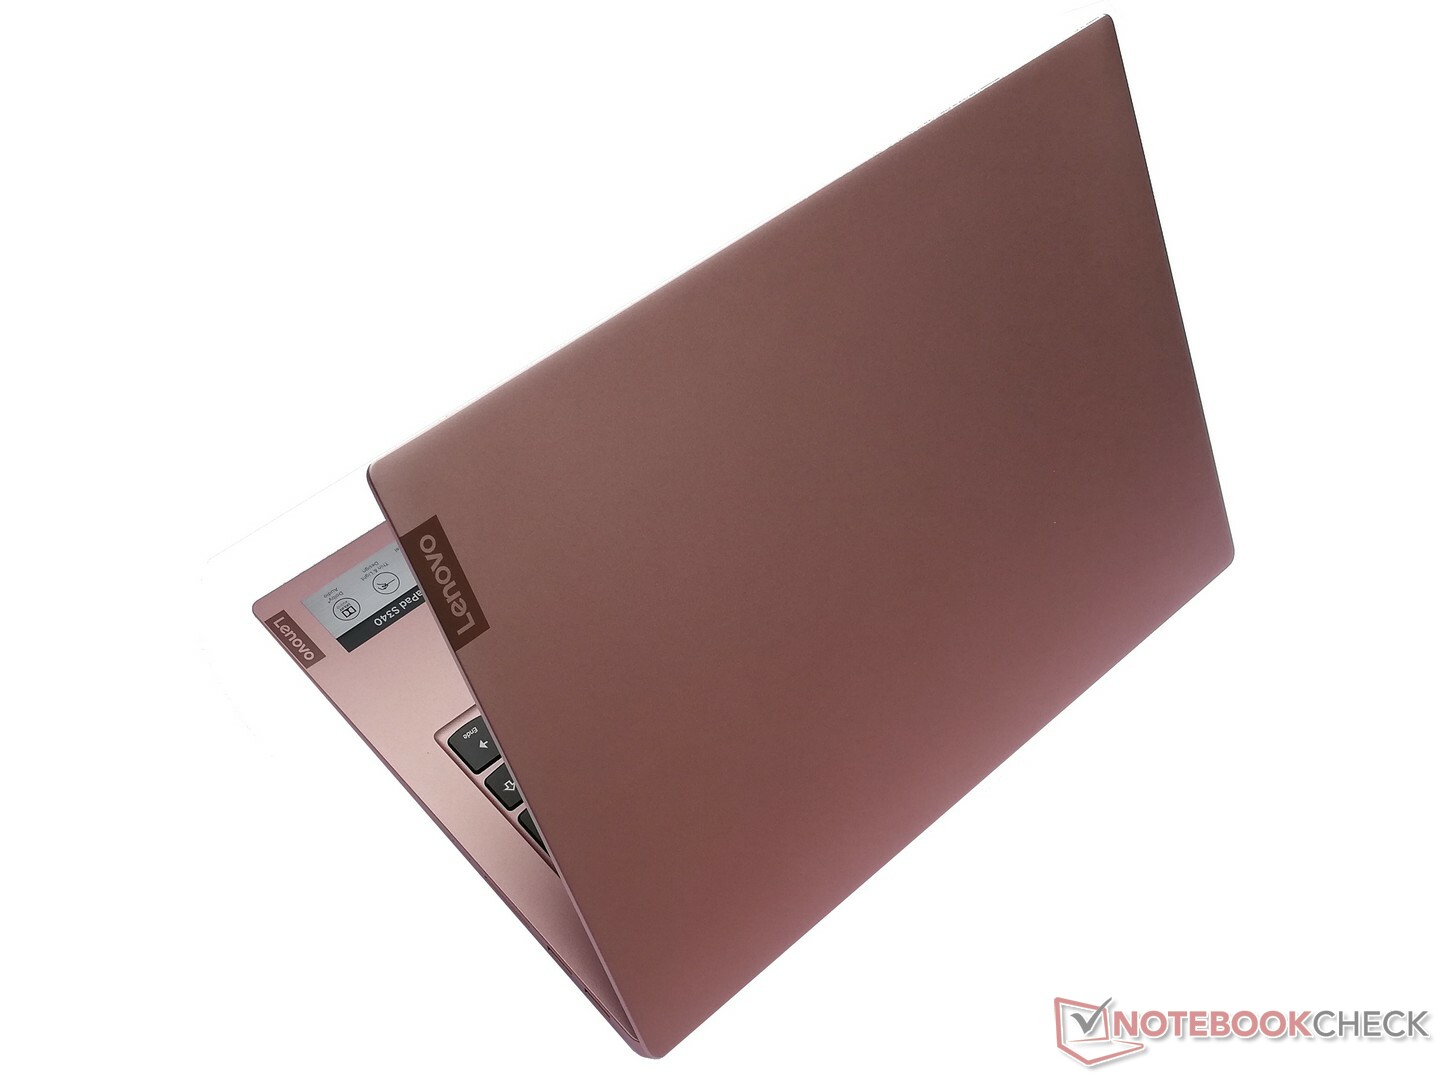 Lenovo IdeaPad S340 (i7-8565U, MX230) Laptop Review ...